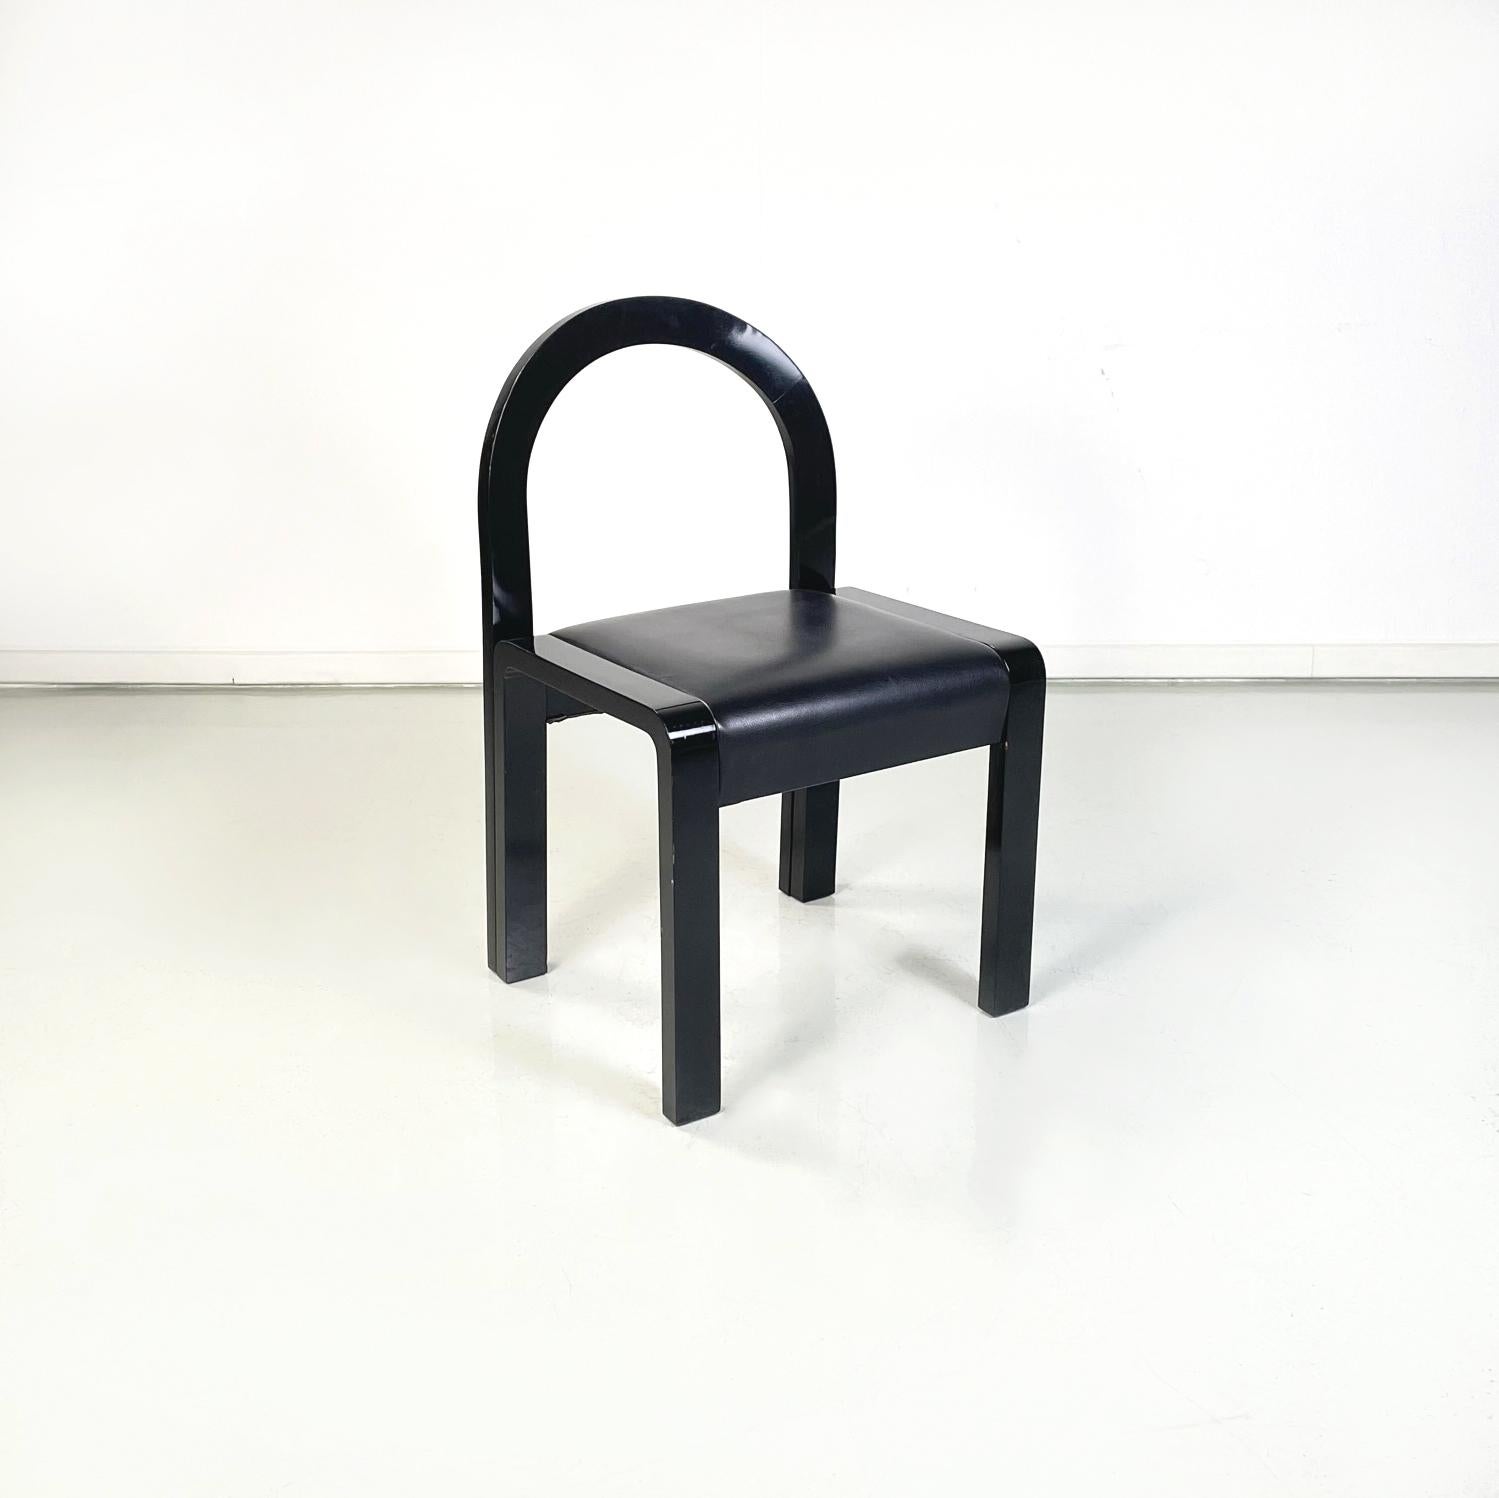 Chaises modernes italiennes en bois laqué noir et cuir noir, années 1980
Ensemble de six chaises avec assise carrée en cuir noir. Le dossier arqué et la structure à section rectangulaire sont en bois laqué noir.
1980s.
Ces chaises sont en très bon